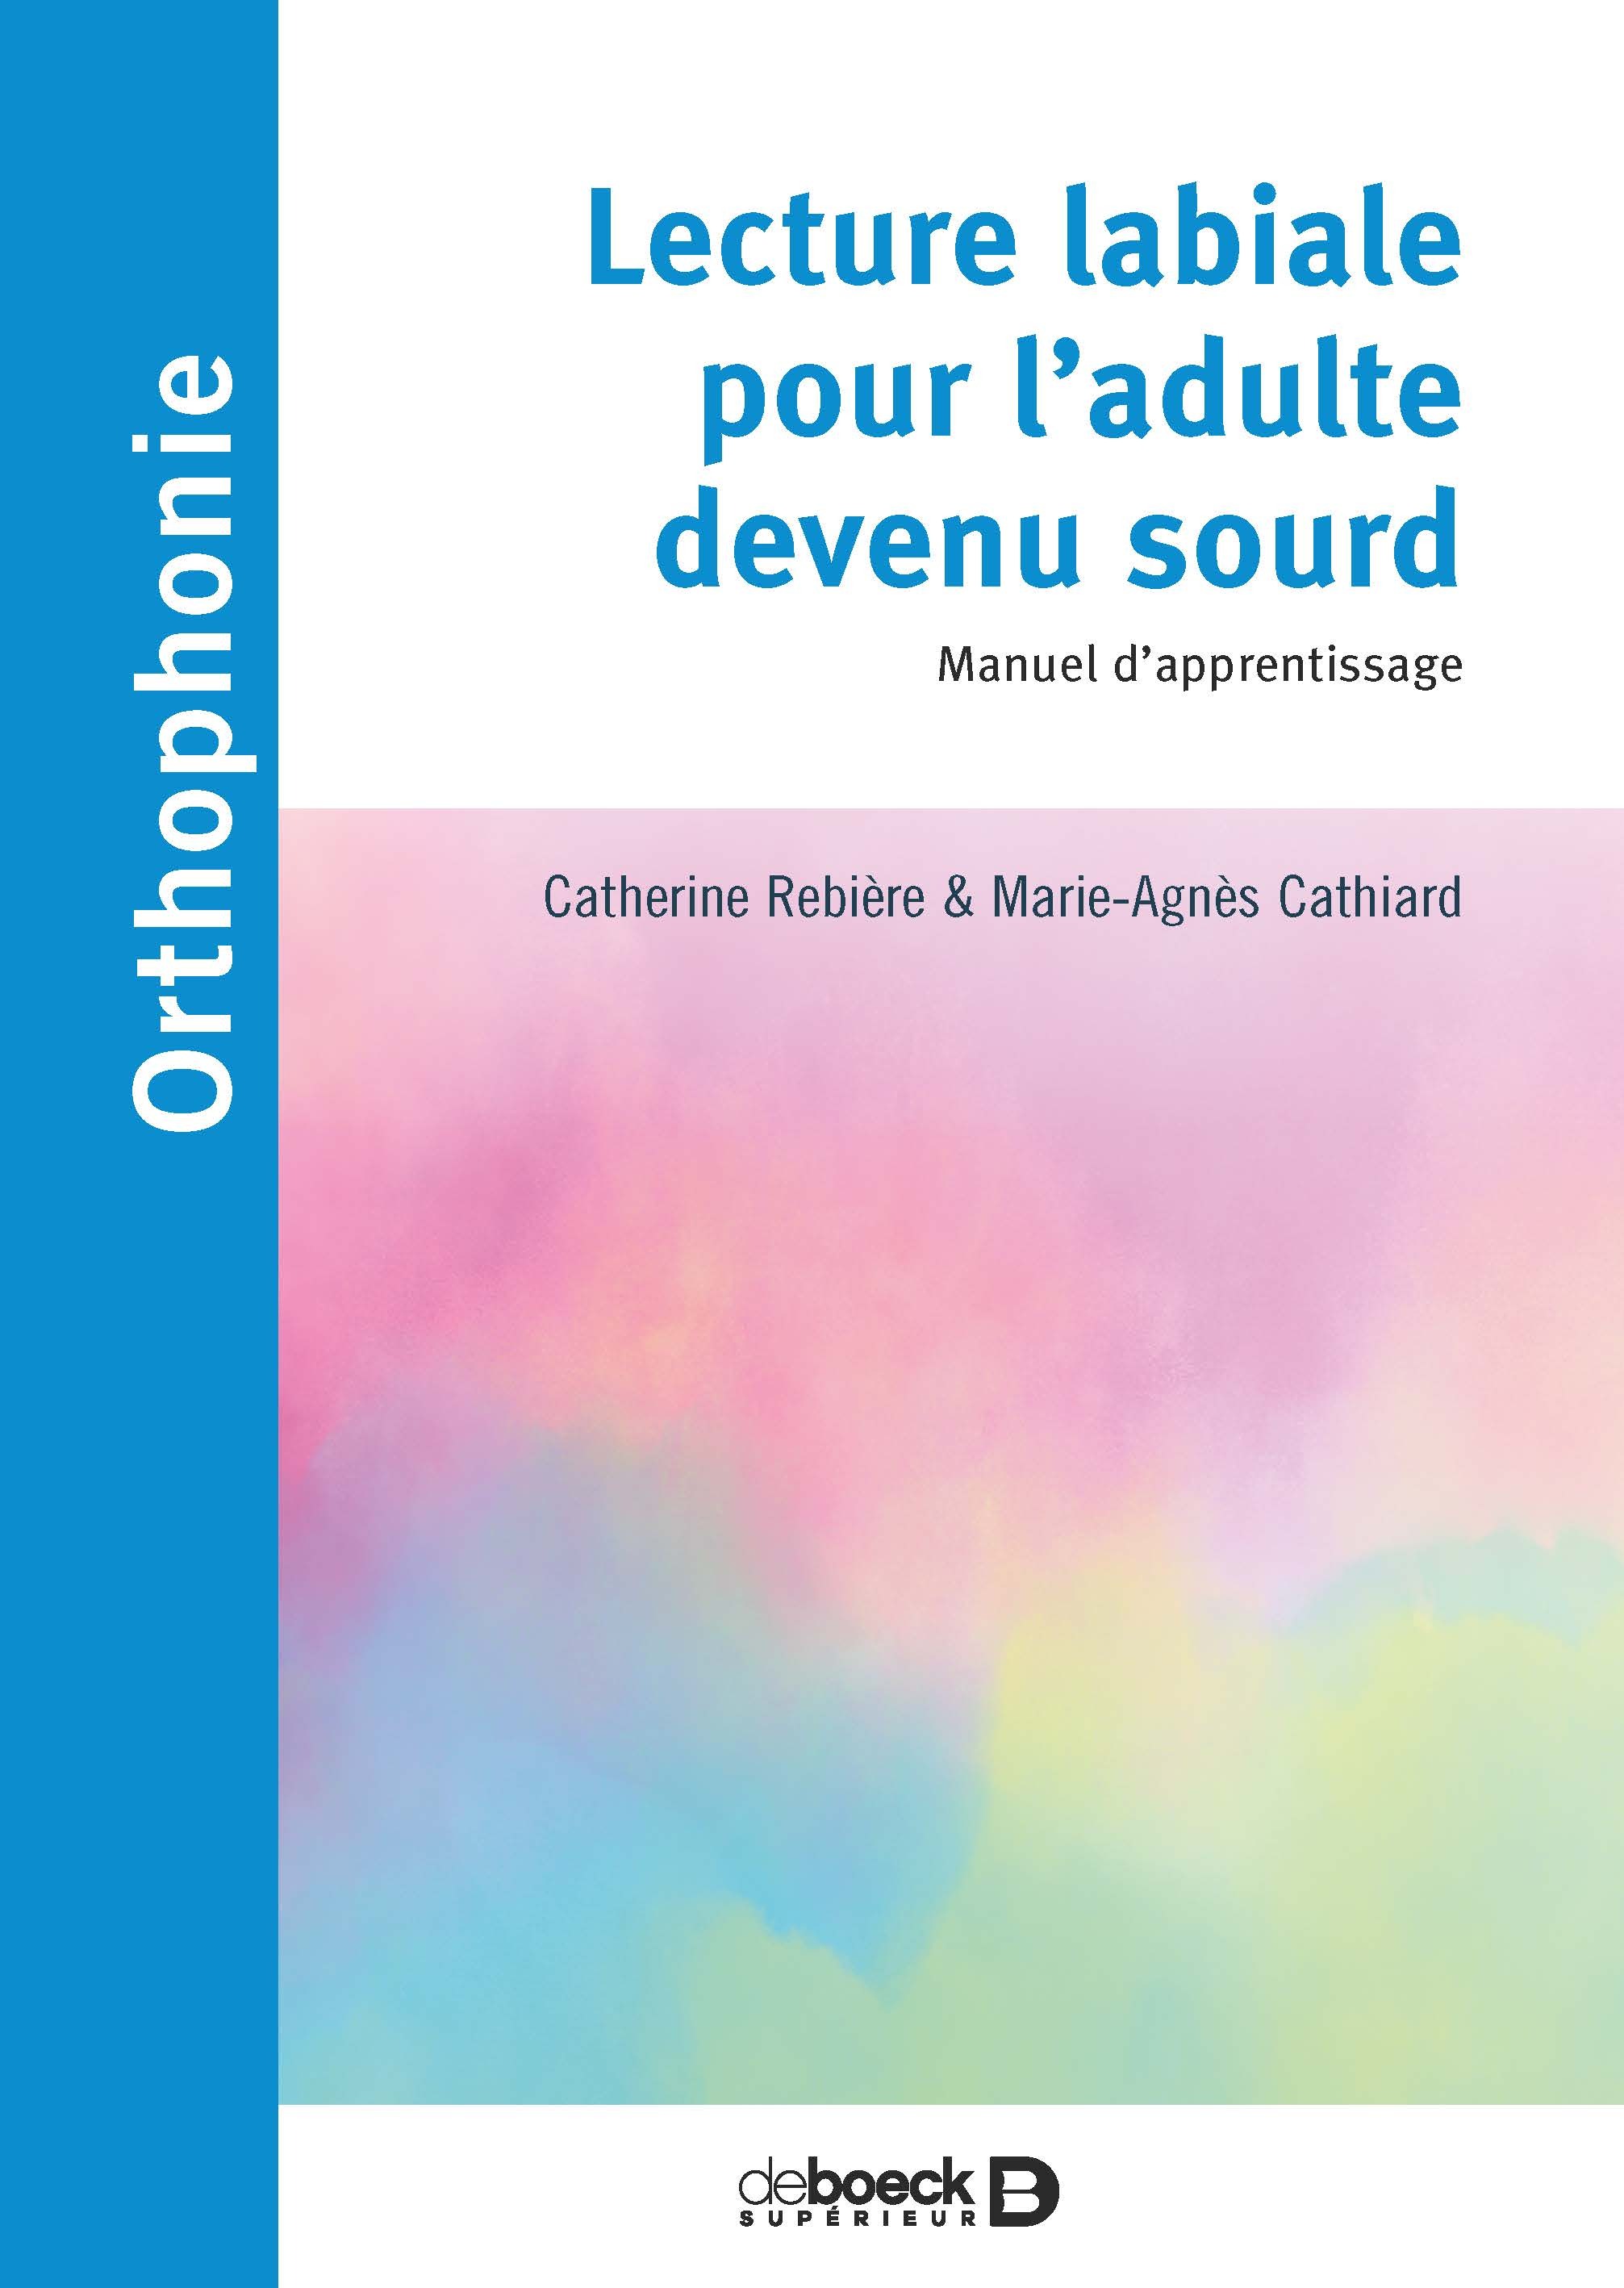 Lecture labiale pour l’adulte devenu sourd, Manuel d’apprentissage (9782353274499-front-cover)